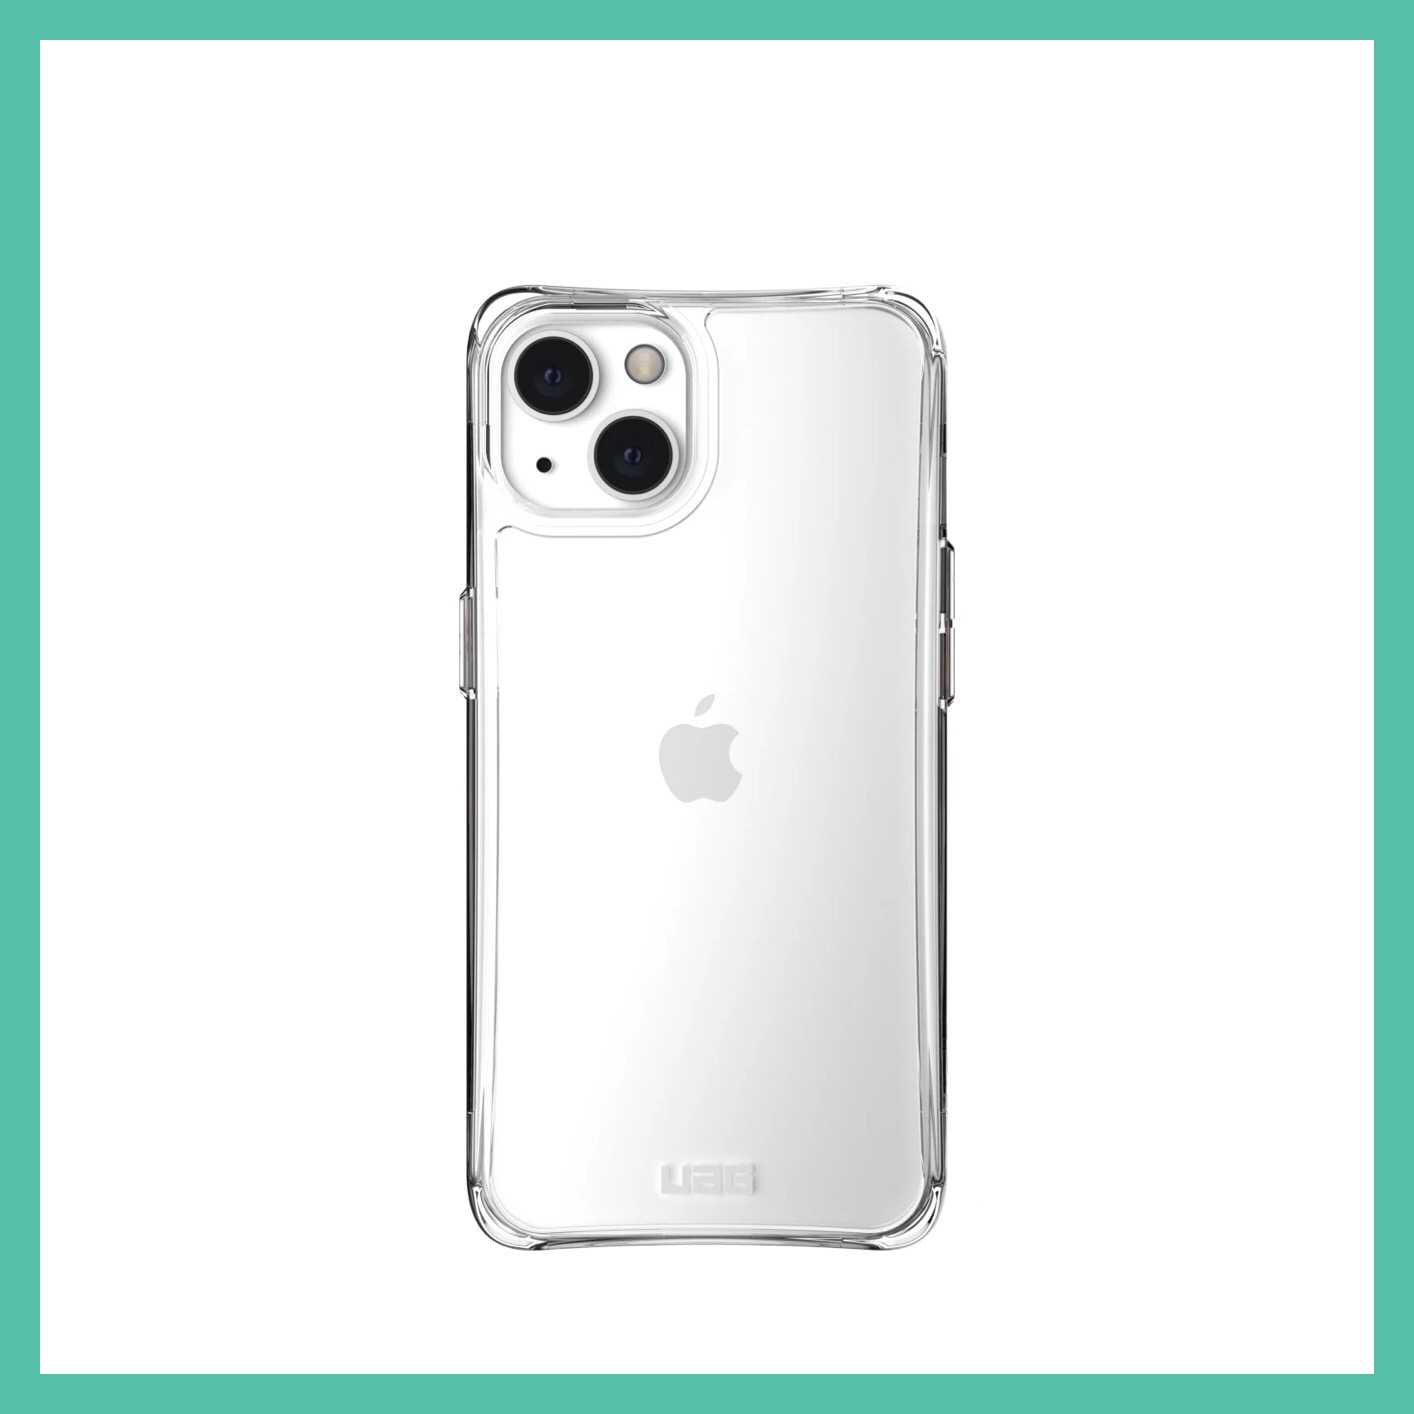 強強滾-(現貨)美國軍規 UAG iPhone13 "6.1" (2021) 耐衝擊保護殼 (2色)